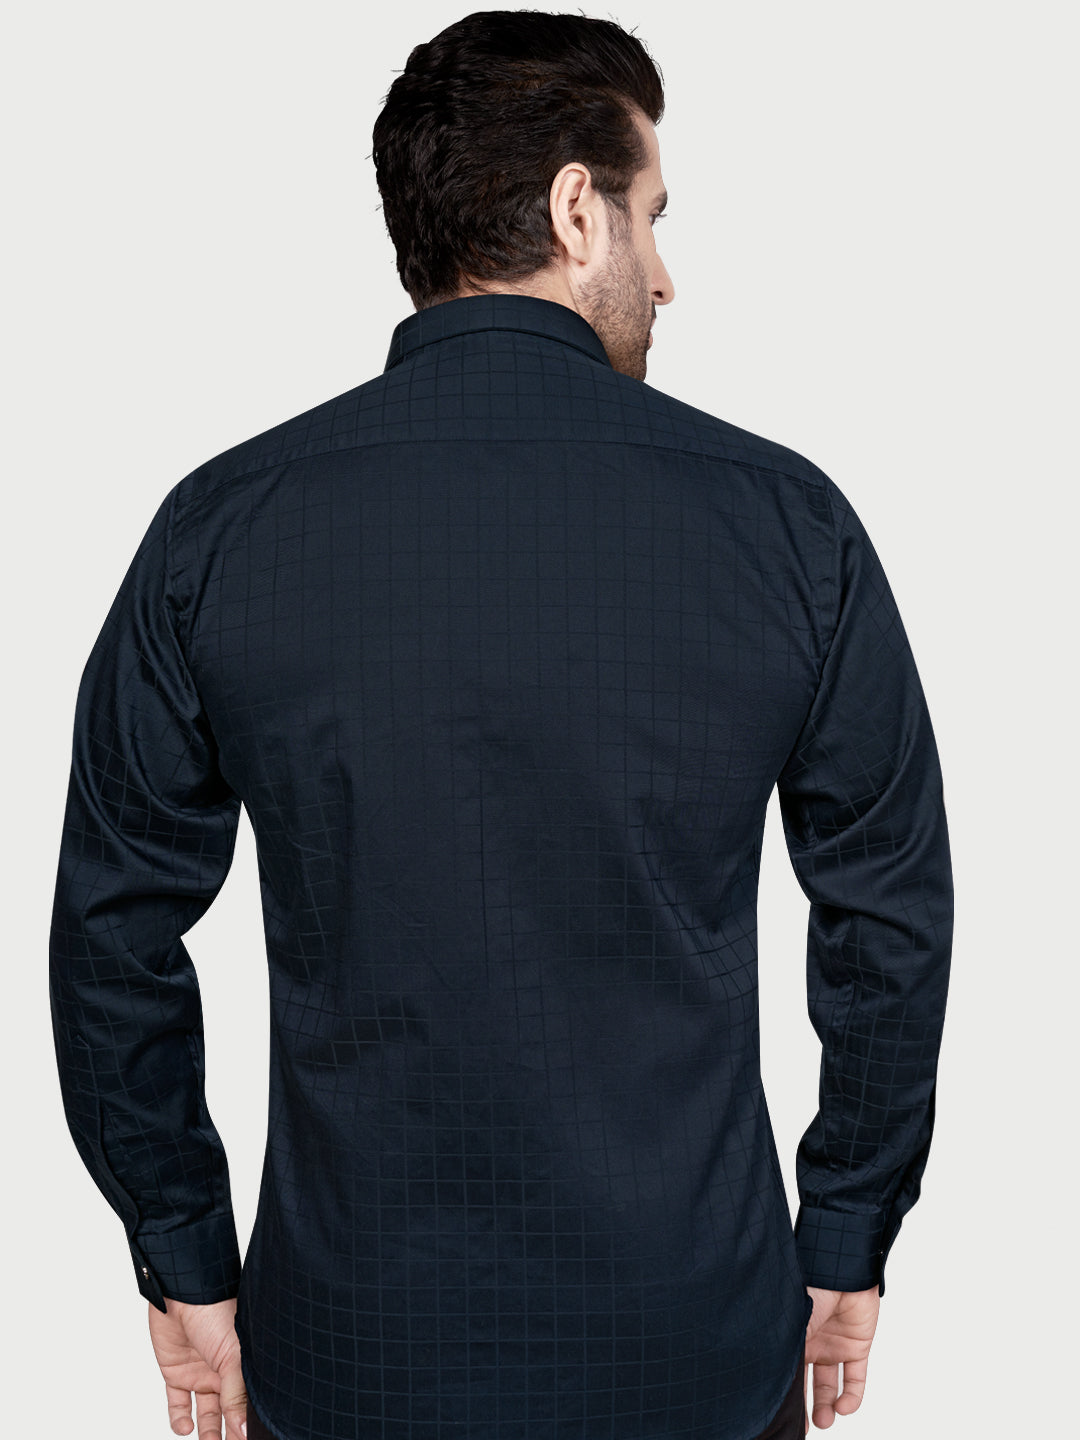 Black & White Designer Shimmer Shirt Navy Blue